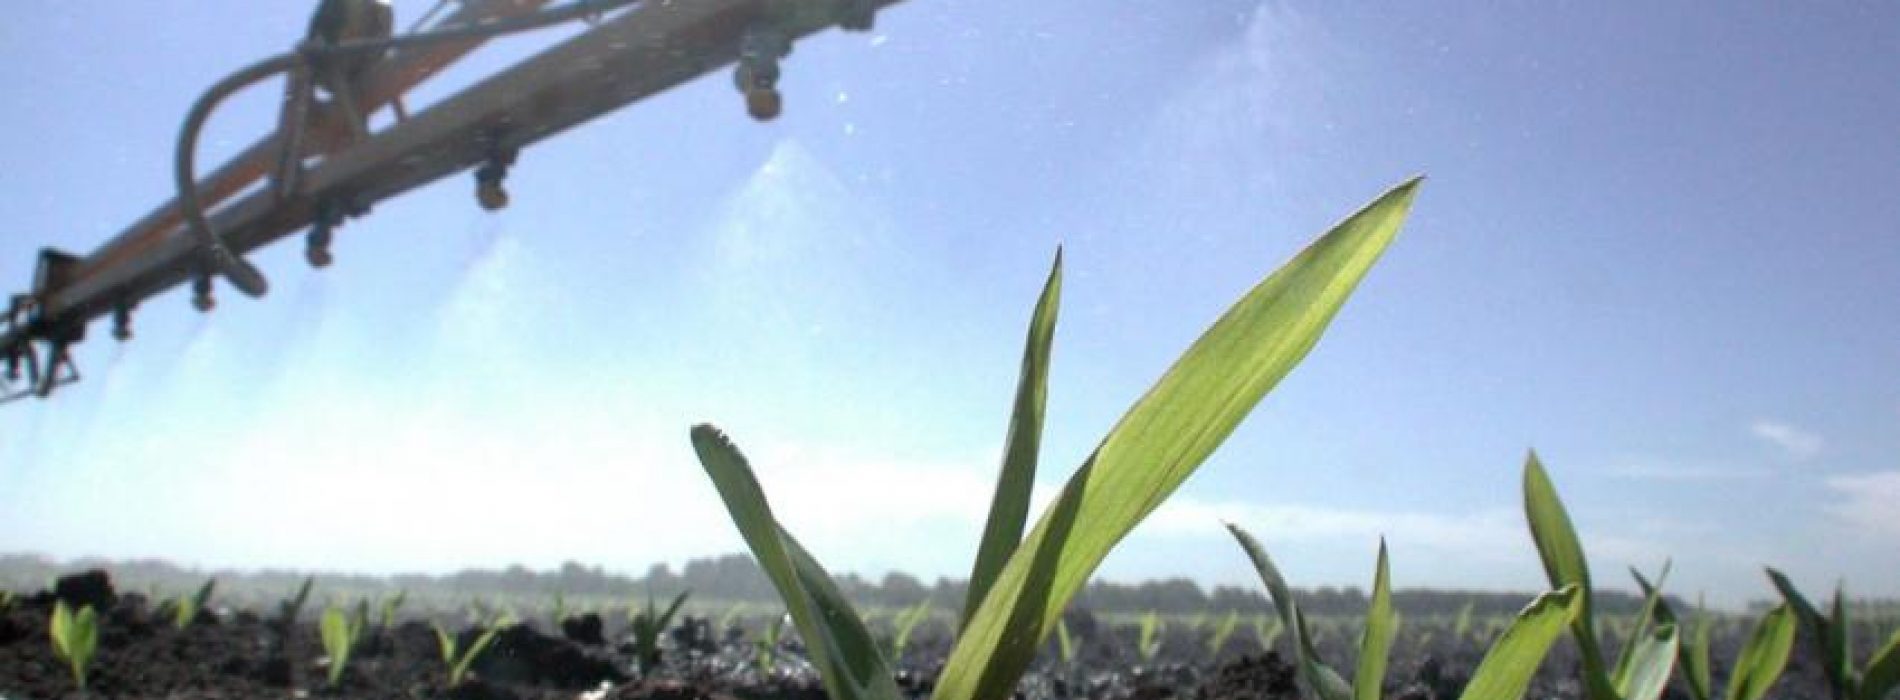 Glyfosaat: omstreden gif van Monsanto dat in recordhoeveelheden over onze akkers en tuinen wordt gesproeid